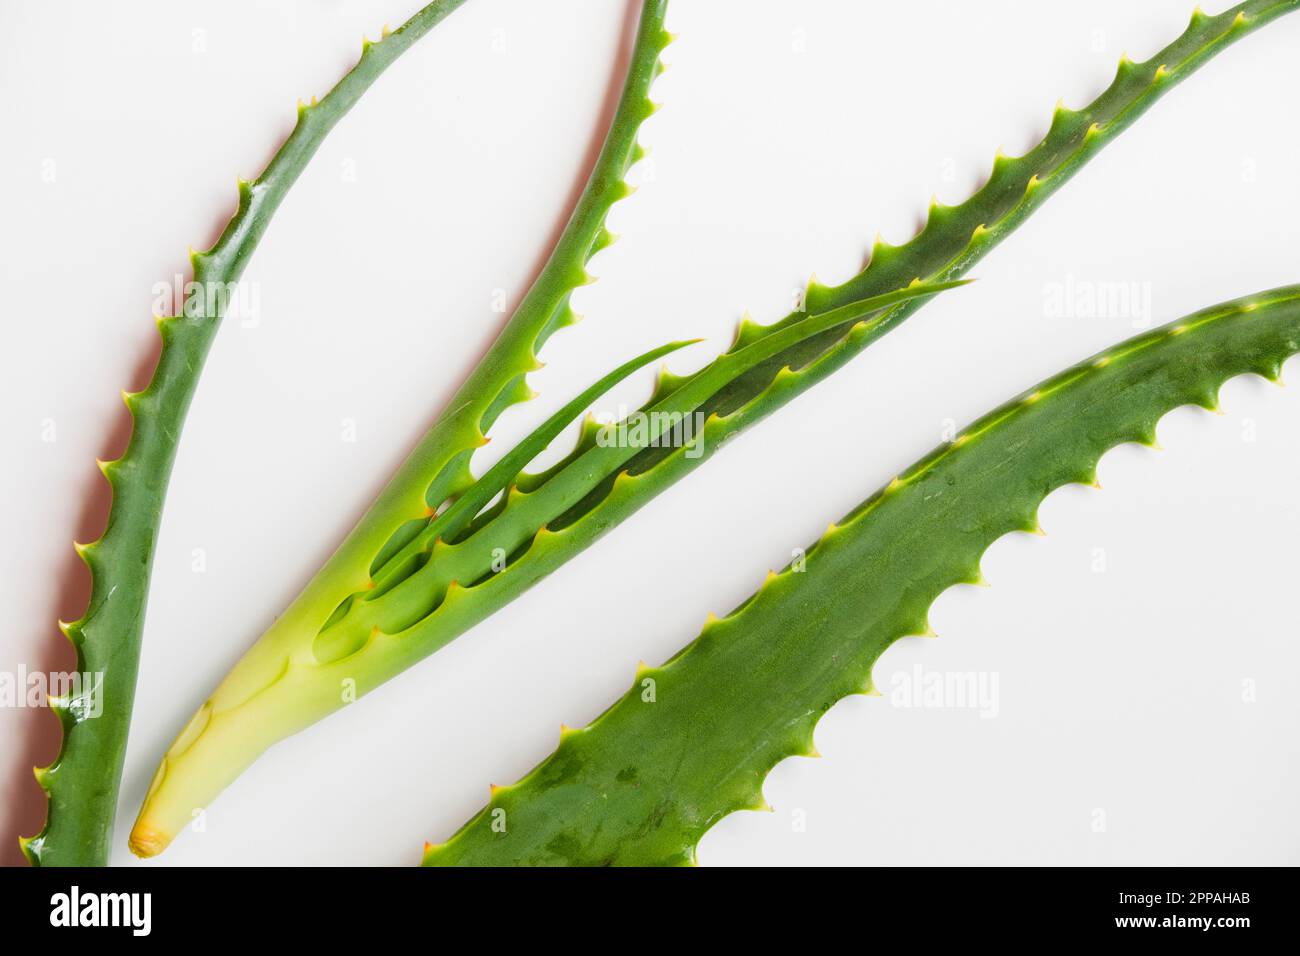 Aloe vera leaves beauty treatment Stock Photo